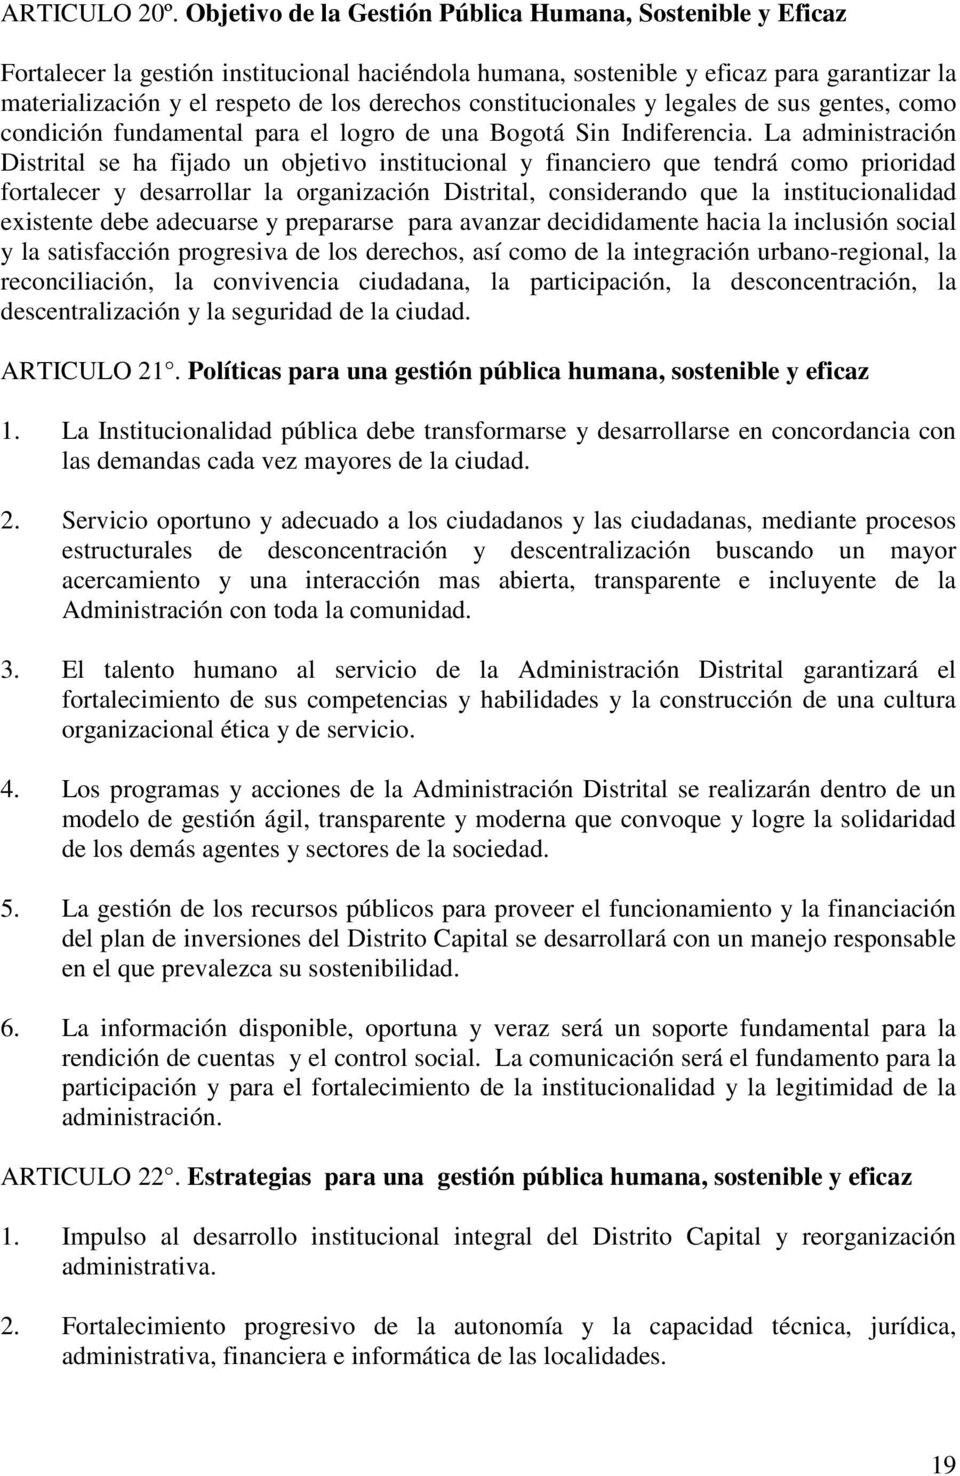 constitucionales y legales de sus gentes, como condición fundamental para el logro de una Bogotá Sin Indiferencia.